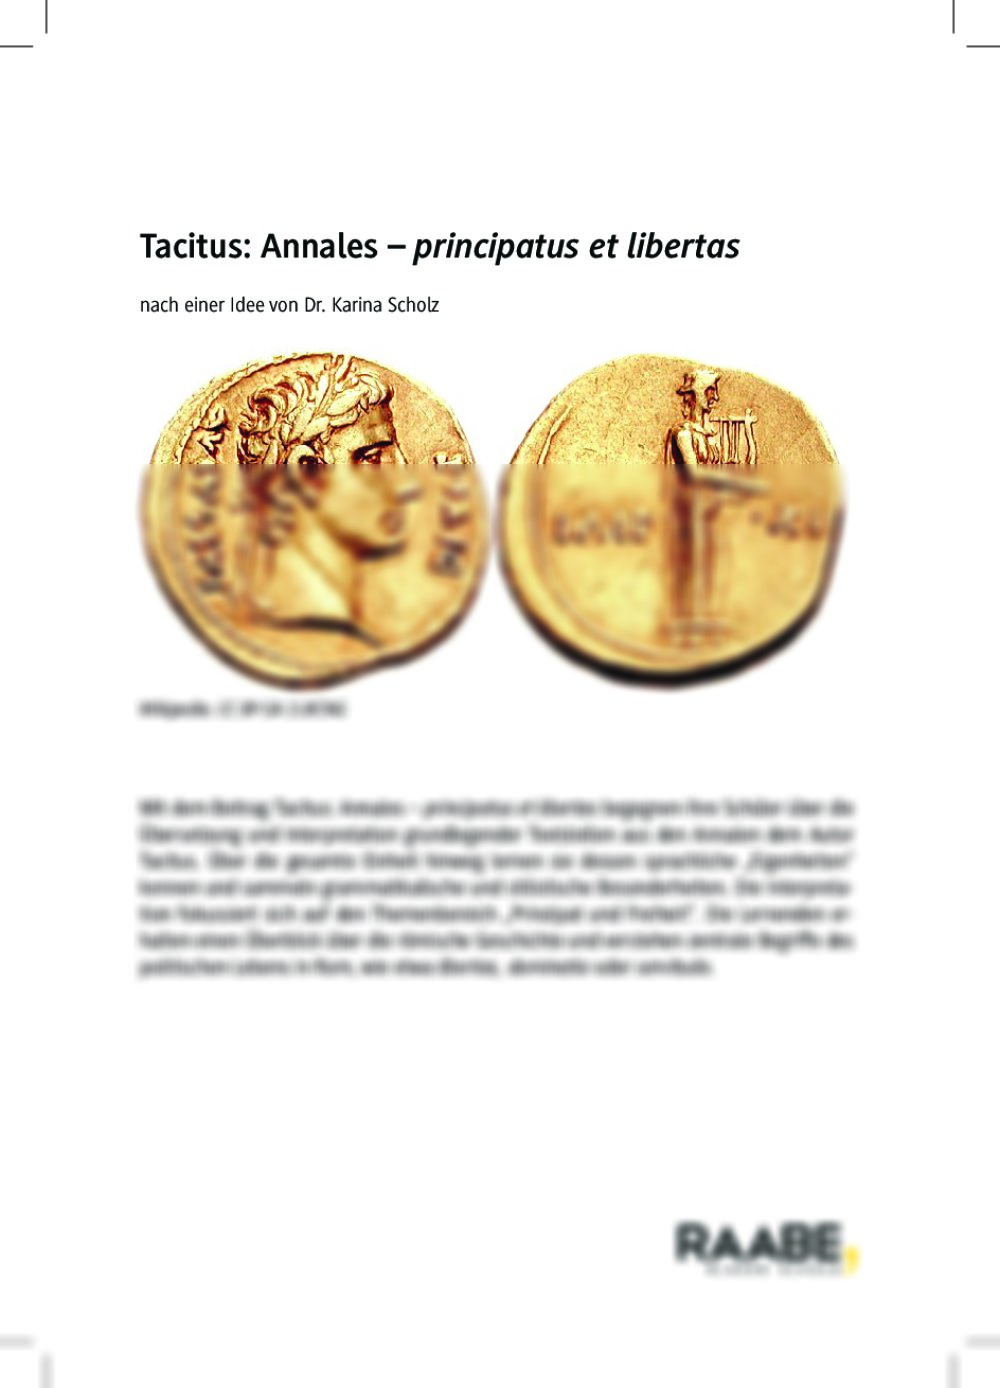 Tacitus Annales - Seite 1